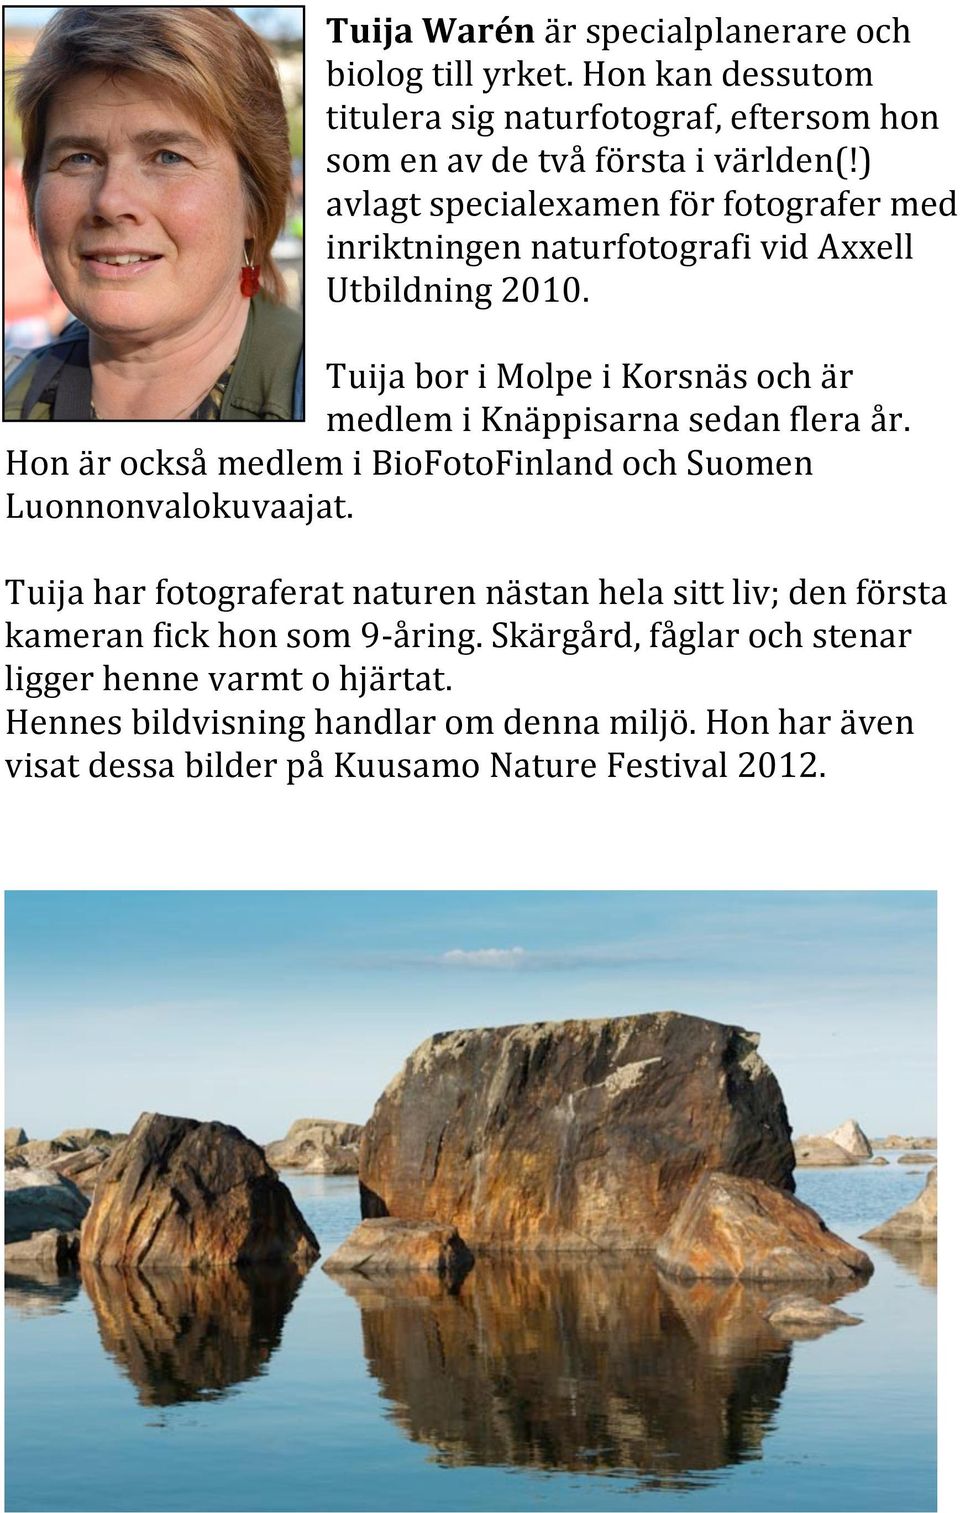 Tuija bor i Molpe i Korsnäs och är medlem i Knäppisarna sedan flera år. Hon är också medlem i BioFotoFinland och Suomen Luonnonvalokuvaajat.